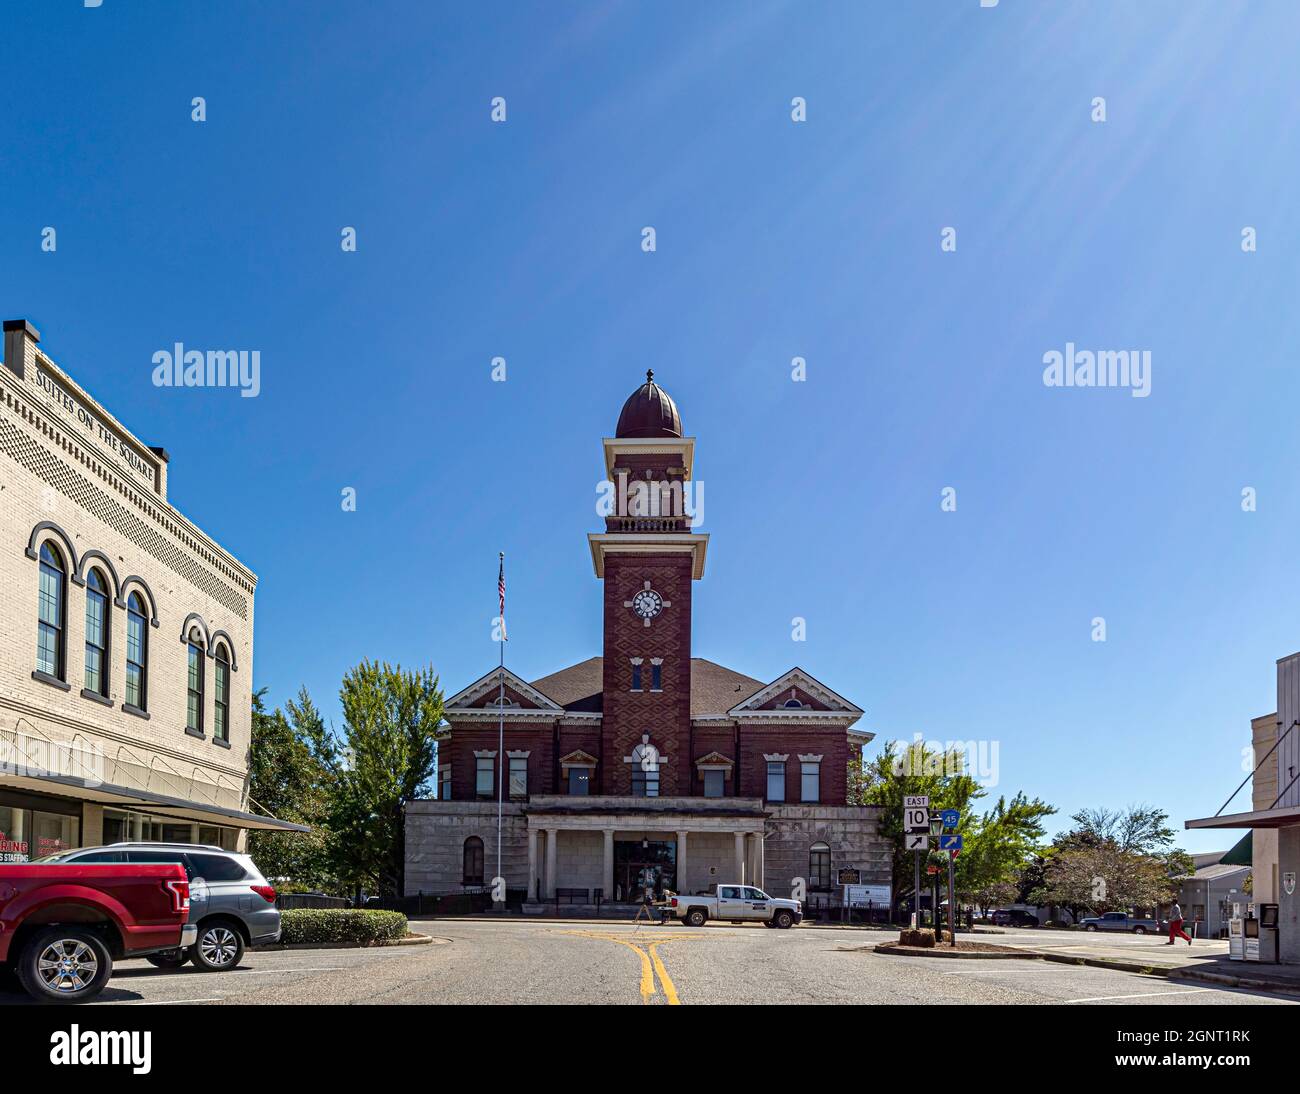 Greenville, Alabama, USA - 24. September 2021: Vordereingang des historischen Butler County Courthouse, erbaut 1903, aus der Sicht der Commerce Street. Grün Stockfoto